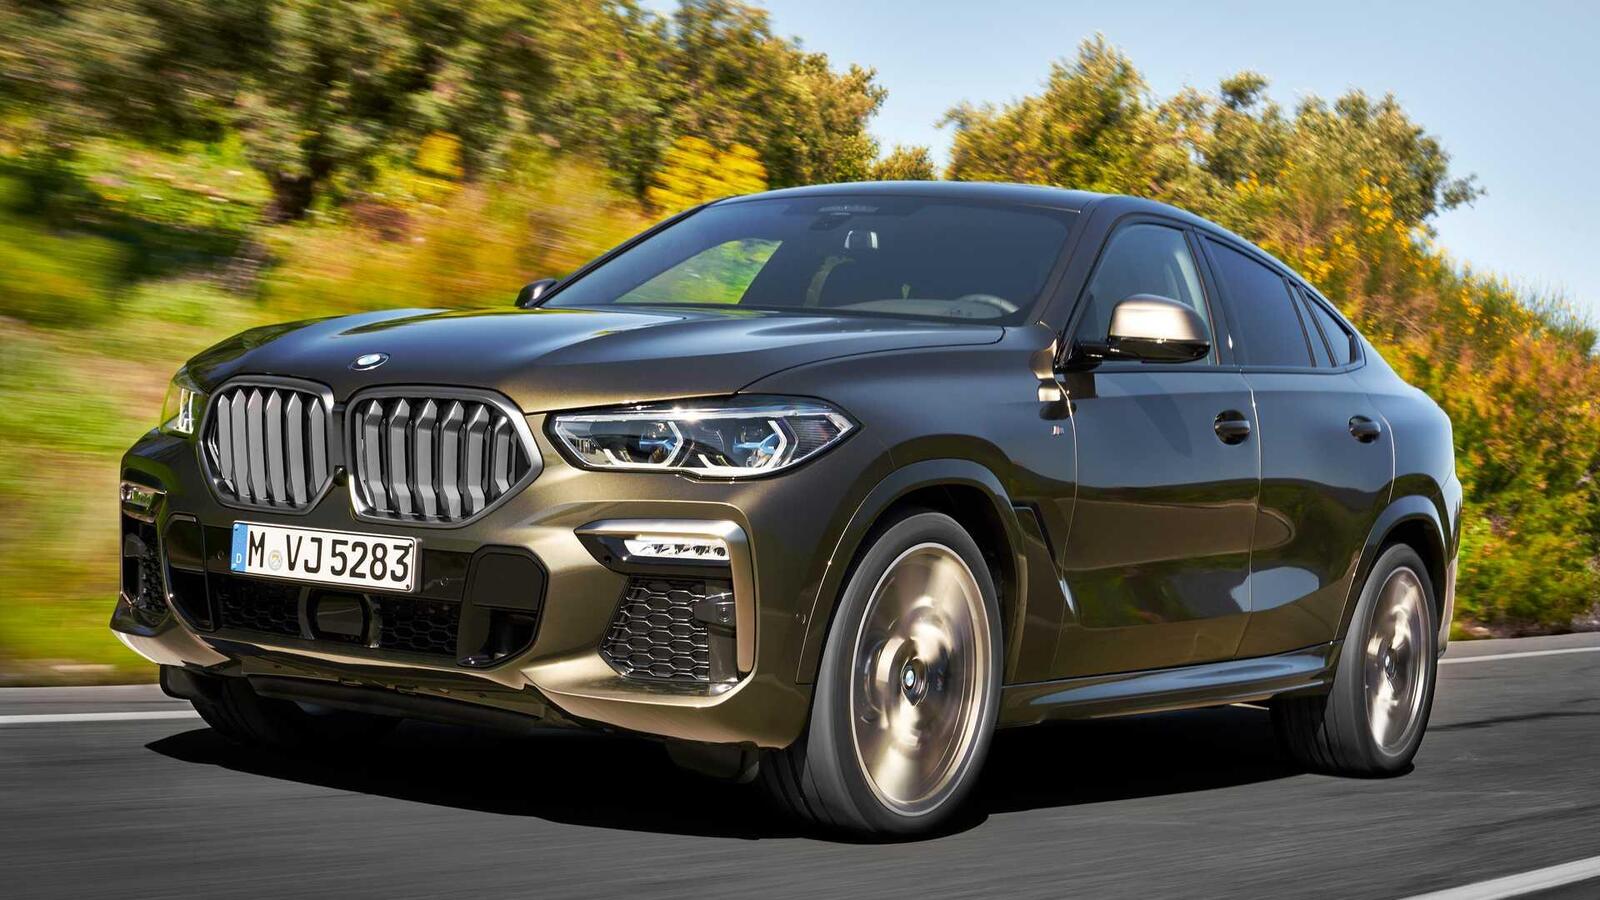 Thế hệ mới BMW X6 2020 chính thức ra mắt - Hình 1